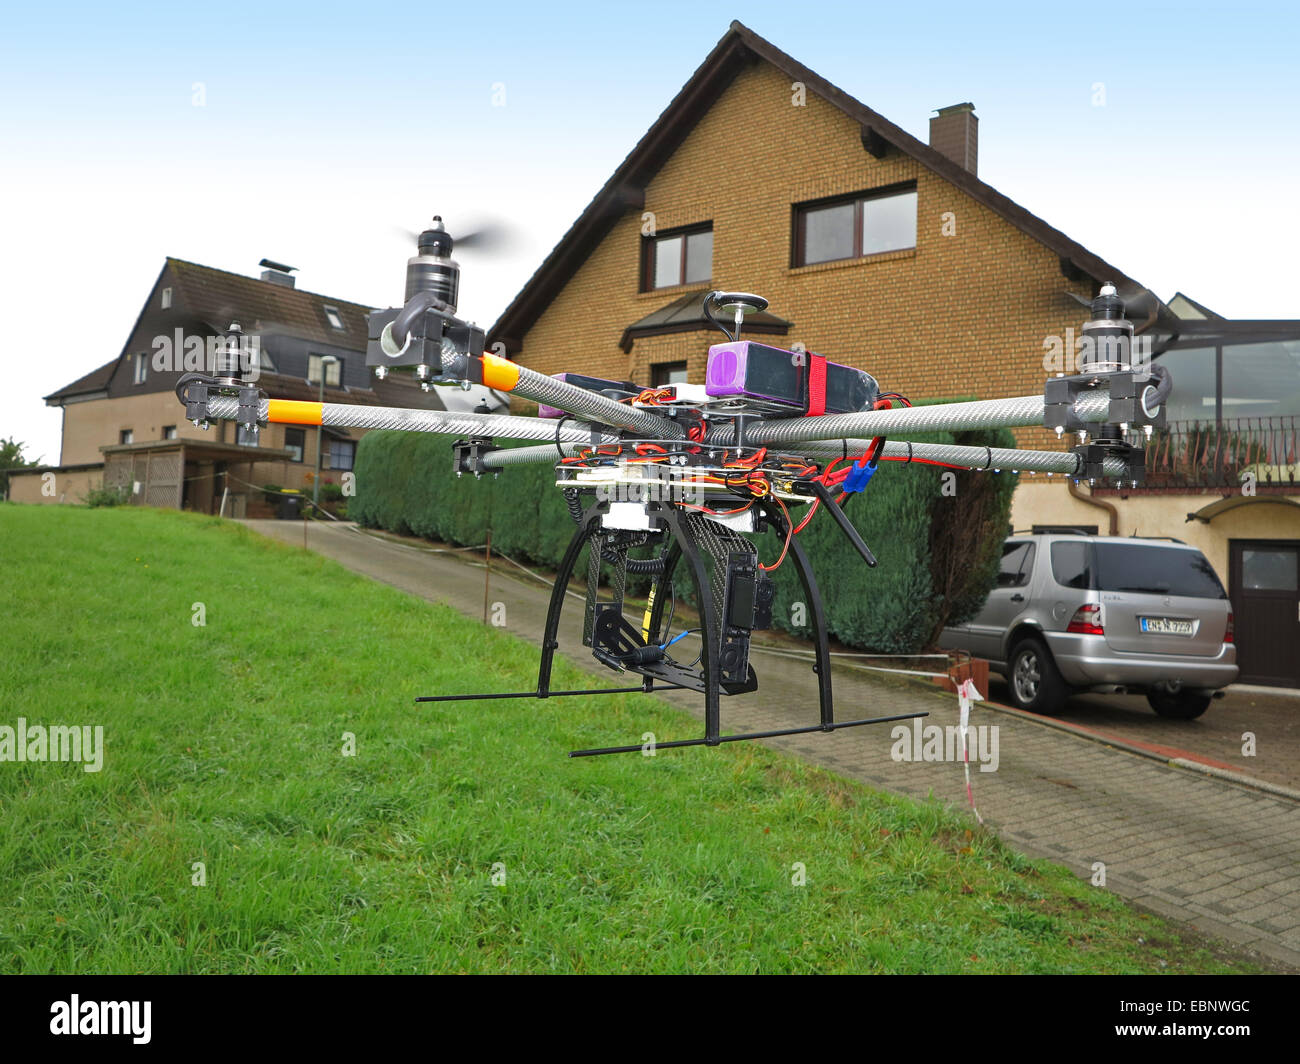 Drone civile volant sur le bord d'un quartier résidentiel, Allemagne Banque D'Images